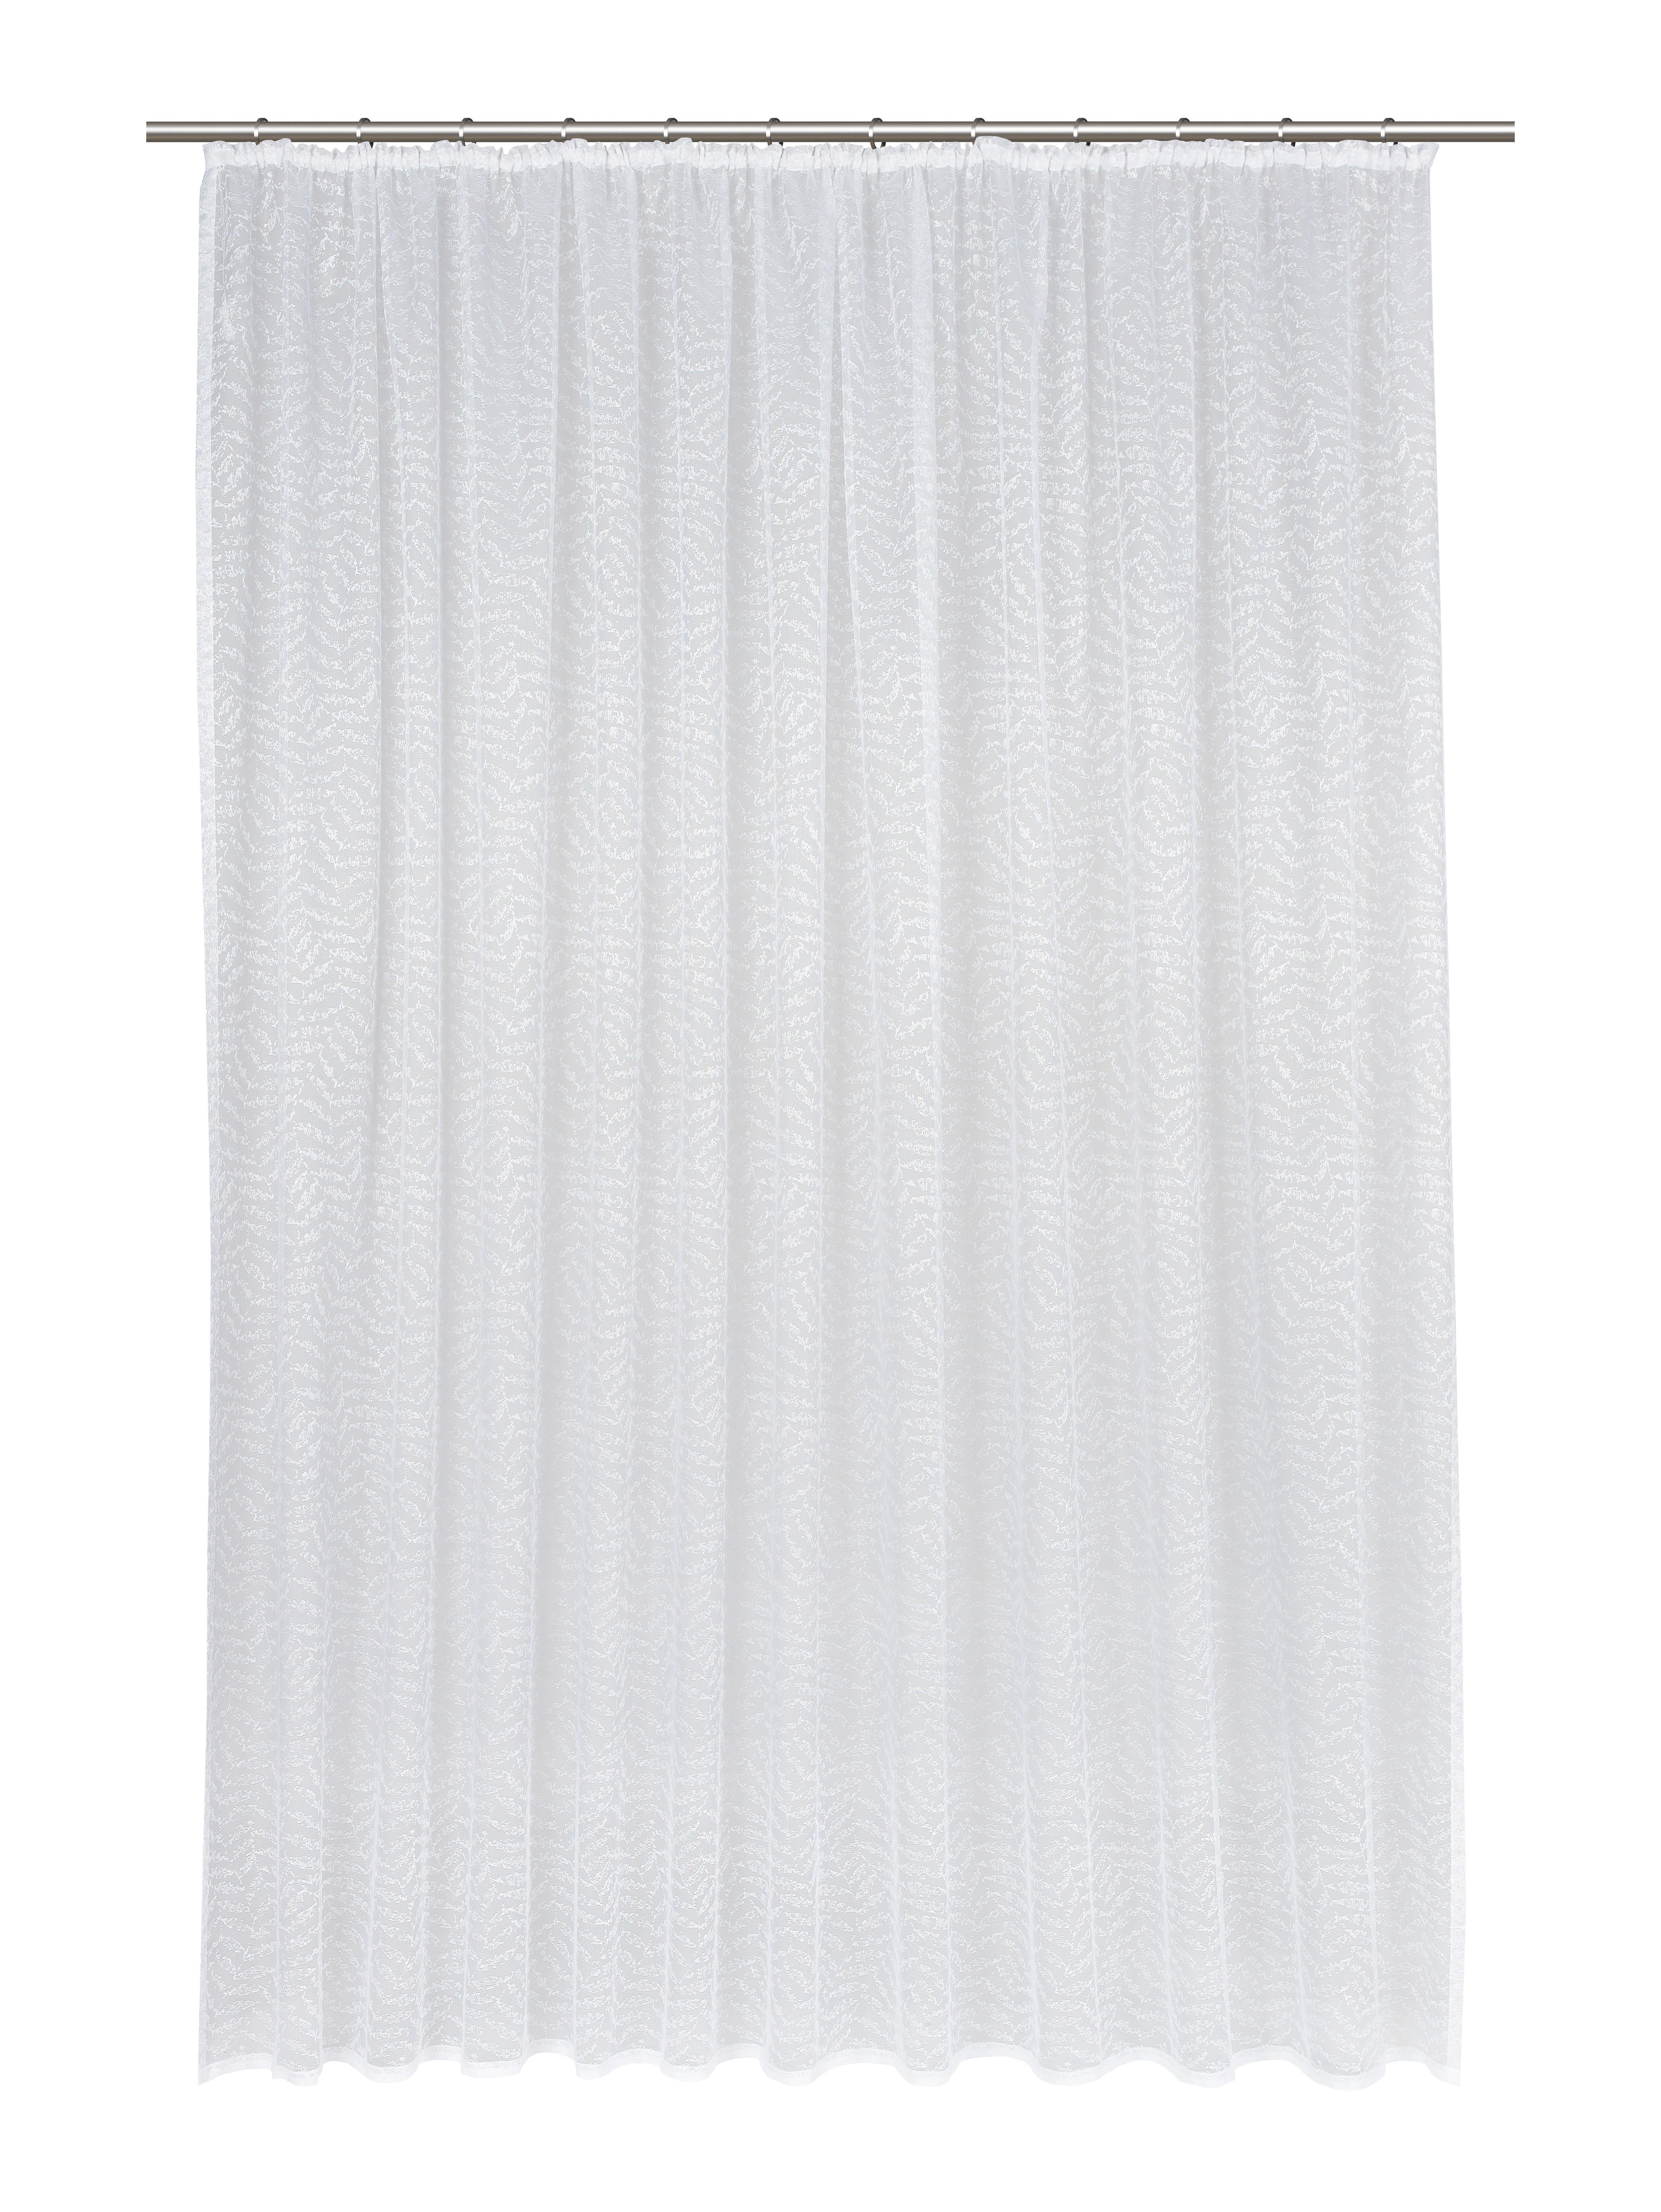 Kusová Záclona Rita Store 3, 300/245cm - biela, Konvenčný, textil (300/245cm) - Modern Living